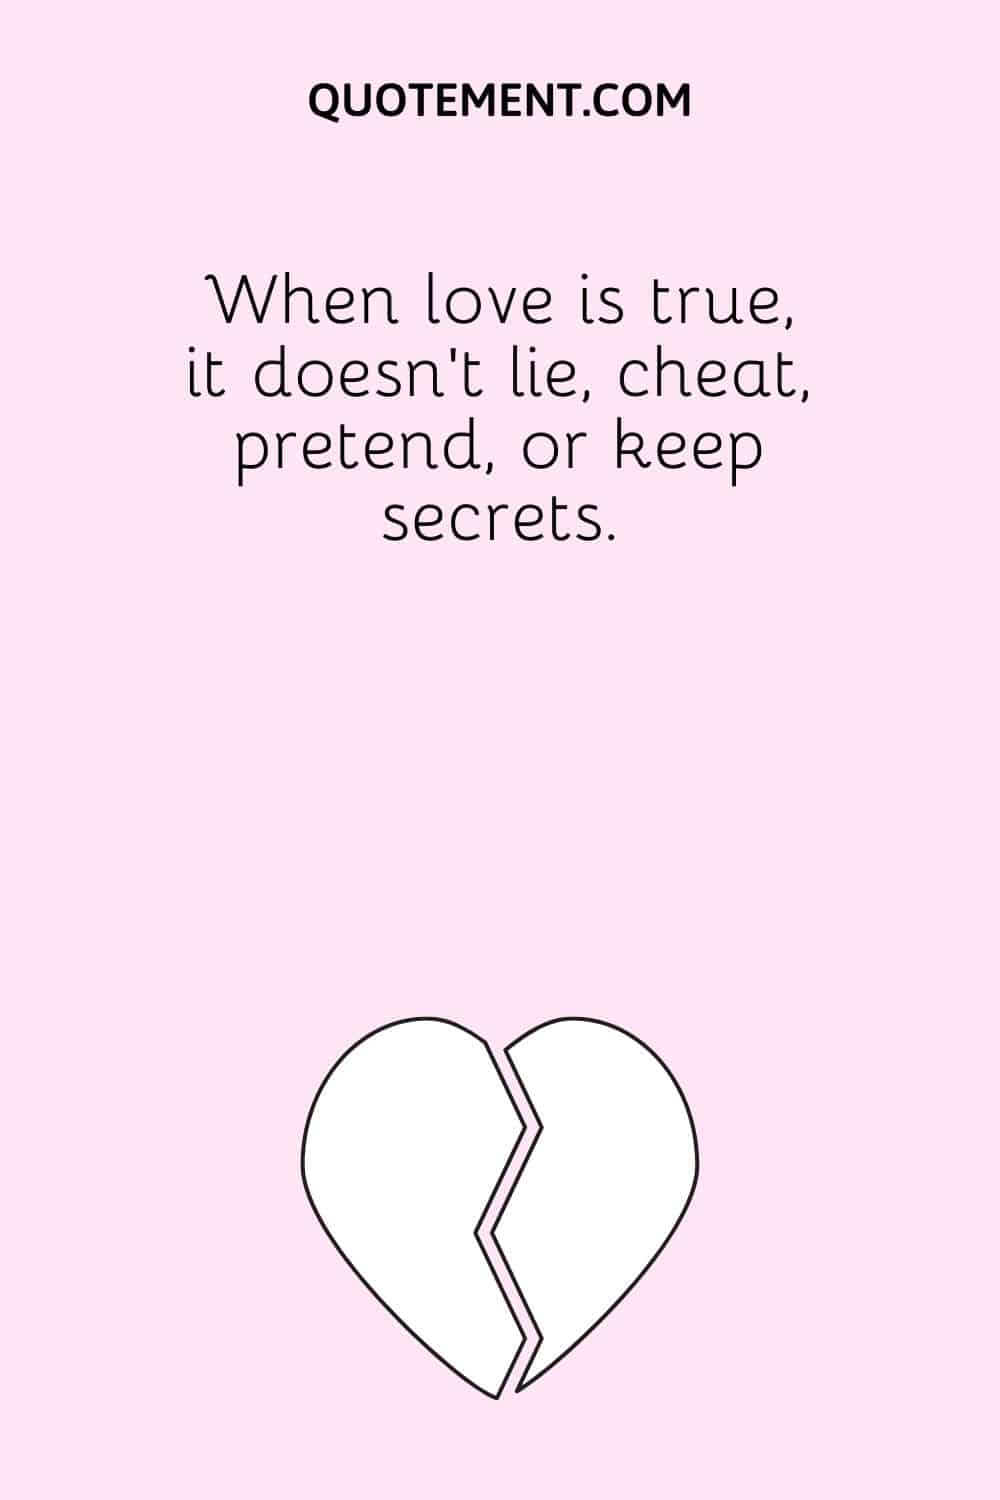 When love is true, it doesn’t lie, cheat, pretend, or keep secrets.